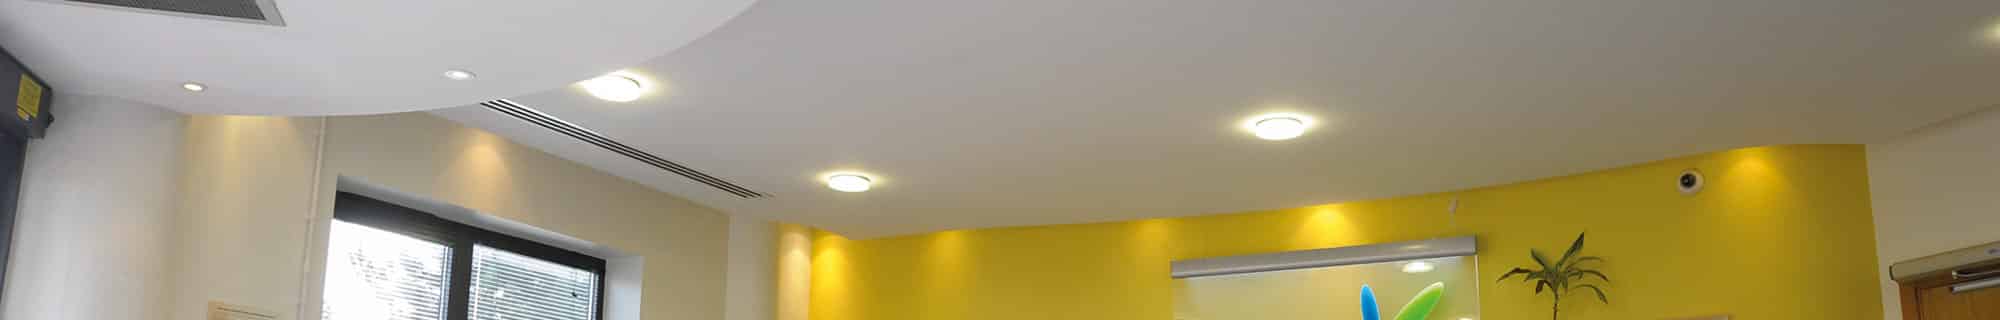 Bulkhead lighting installed ceiling banner